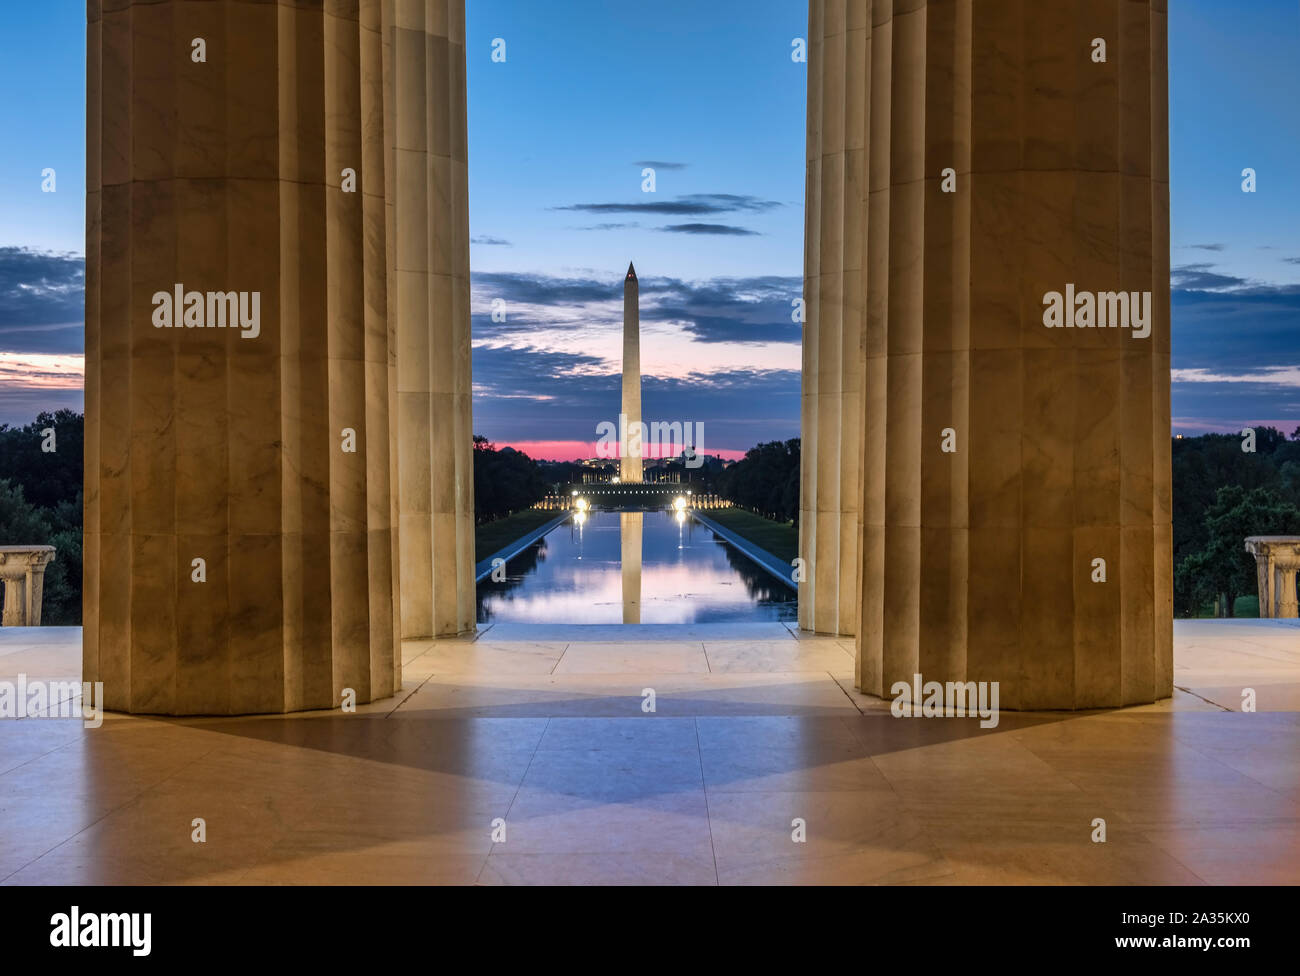 El Monumento a Washington y la reflexión desde el interior de la piscina el Lincoln Memorial, el National Mall, en Washington DC, EE.UU. Foto de stock